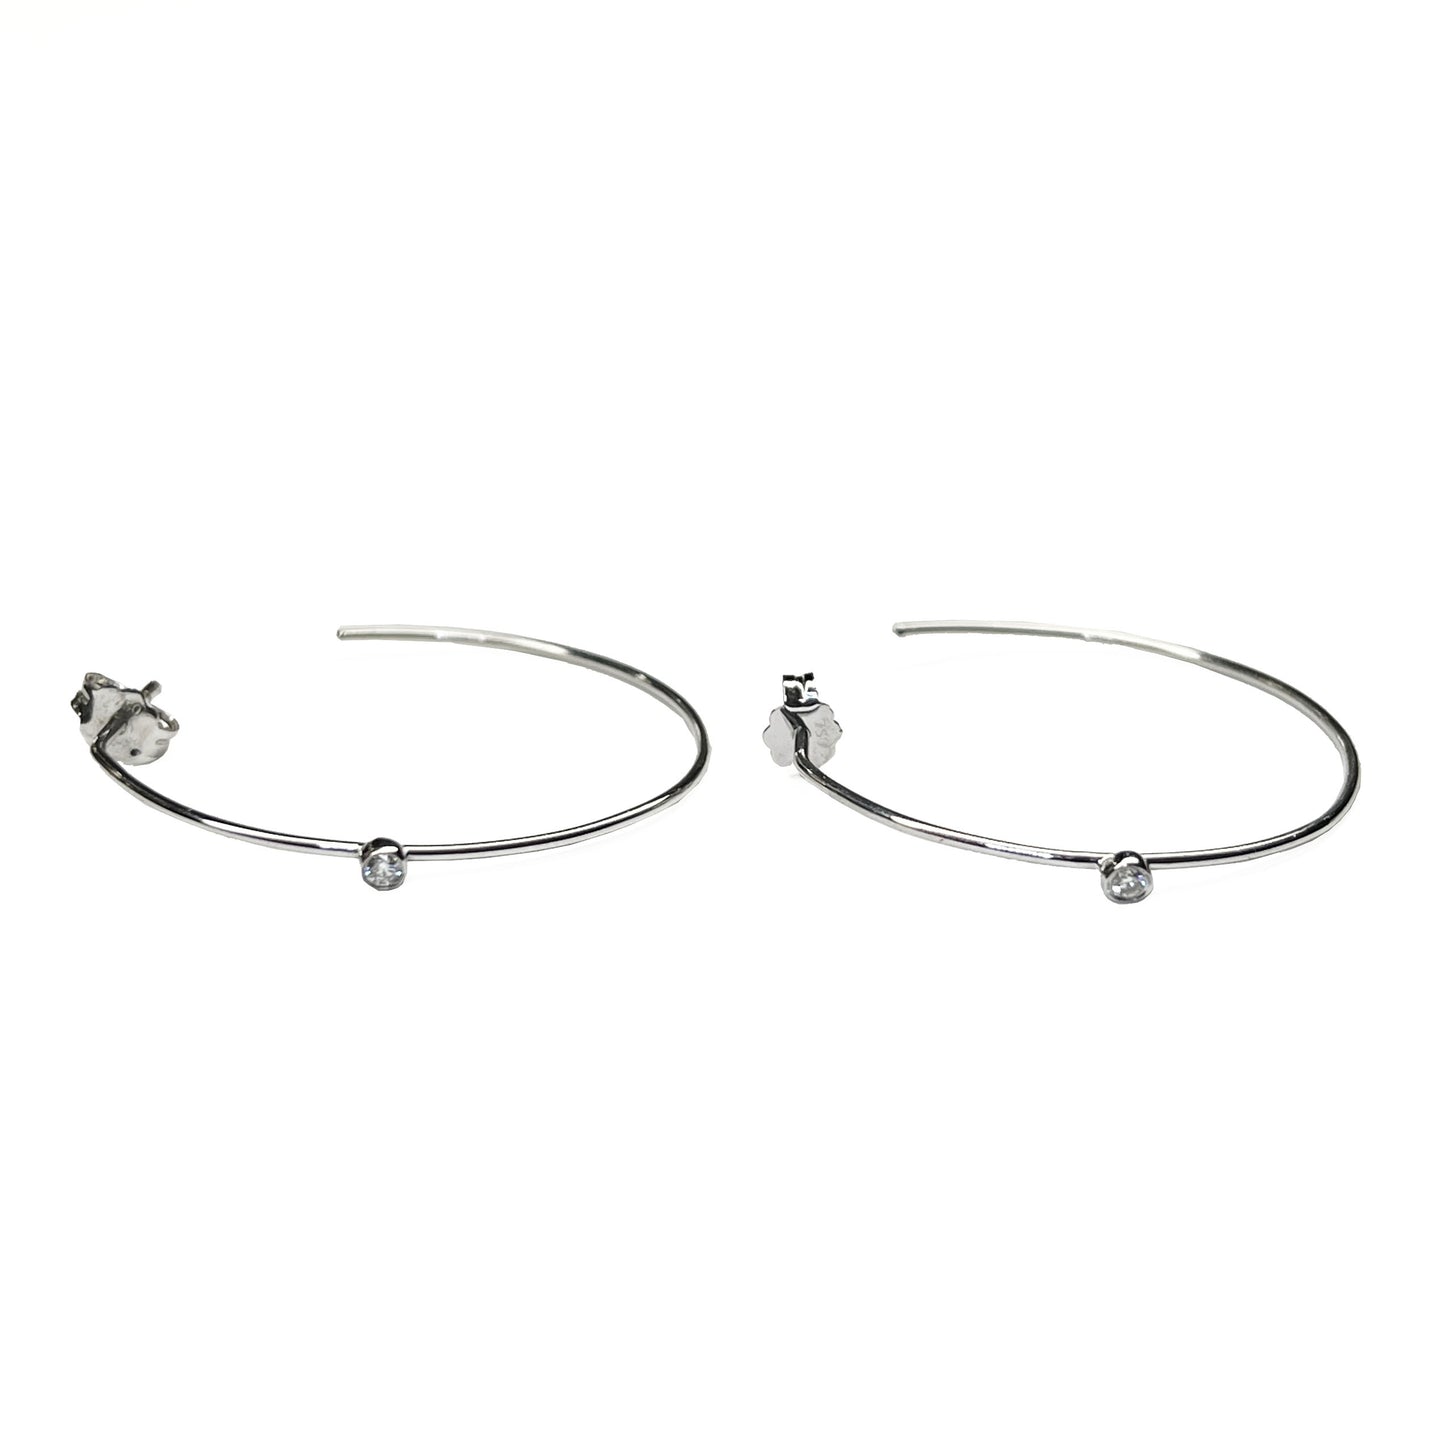 18kw Hoop Earrings with diamond detail